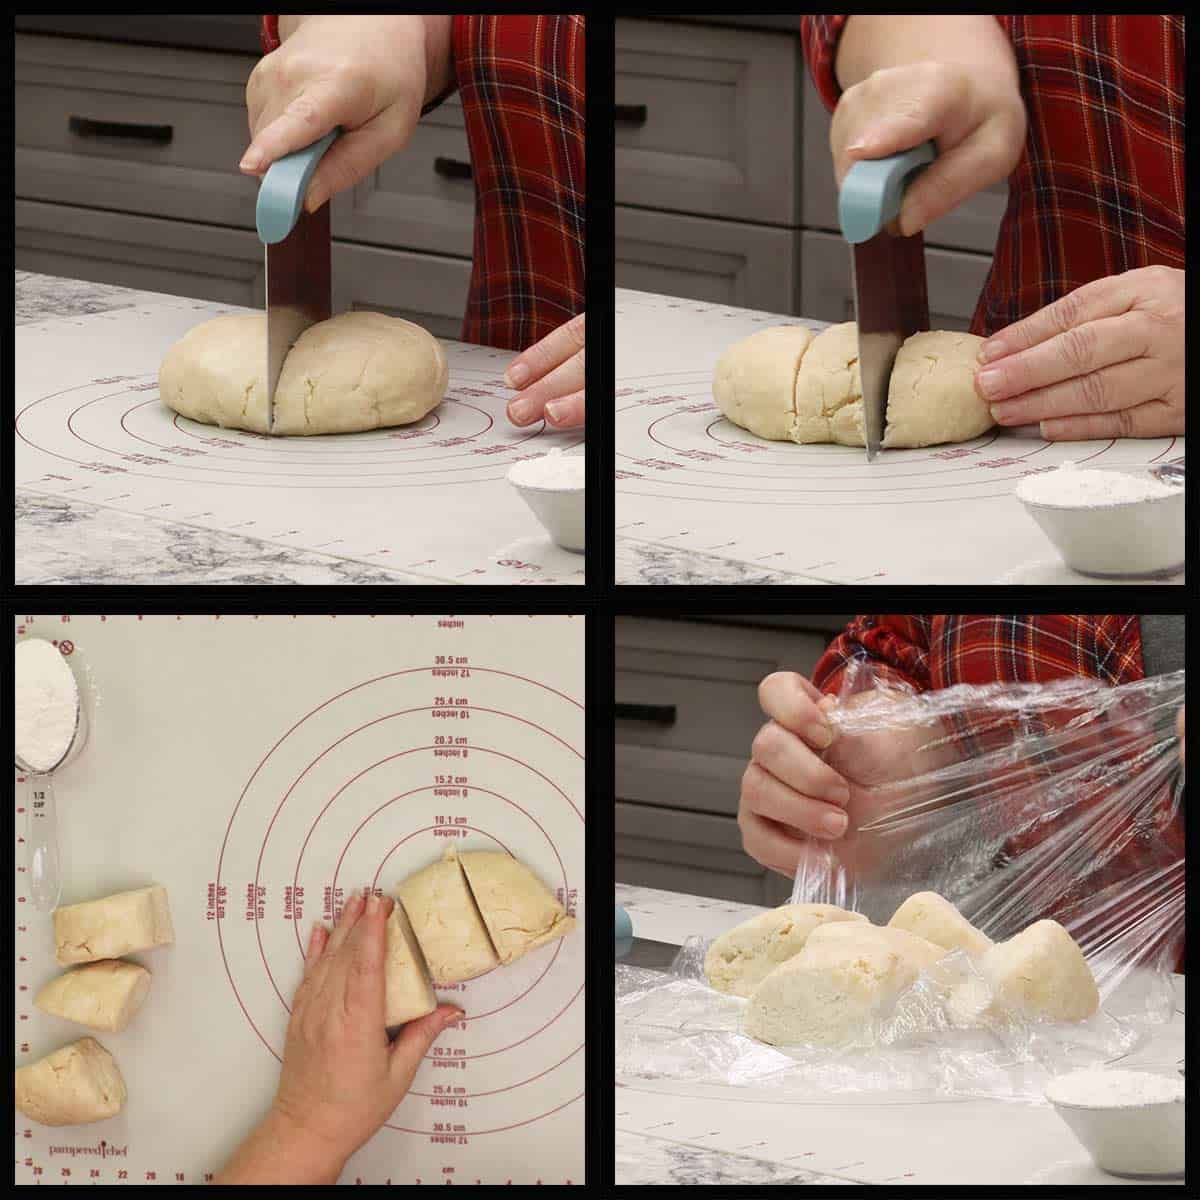 Dividing the dough into 6 equal portions. 
